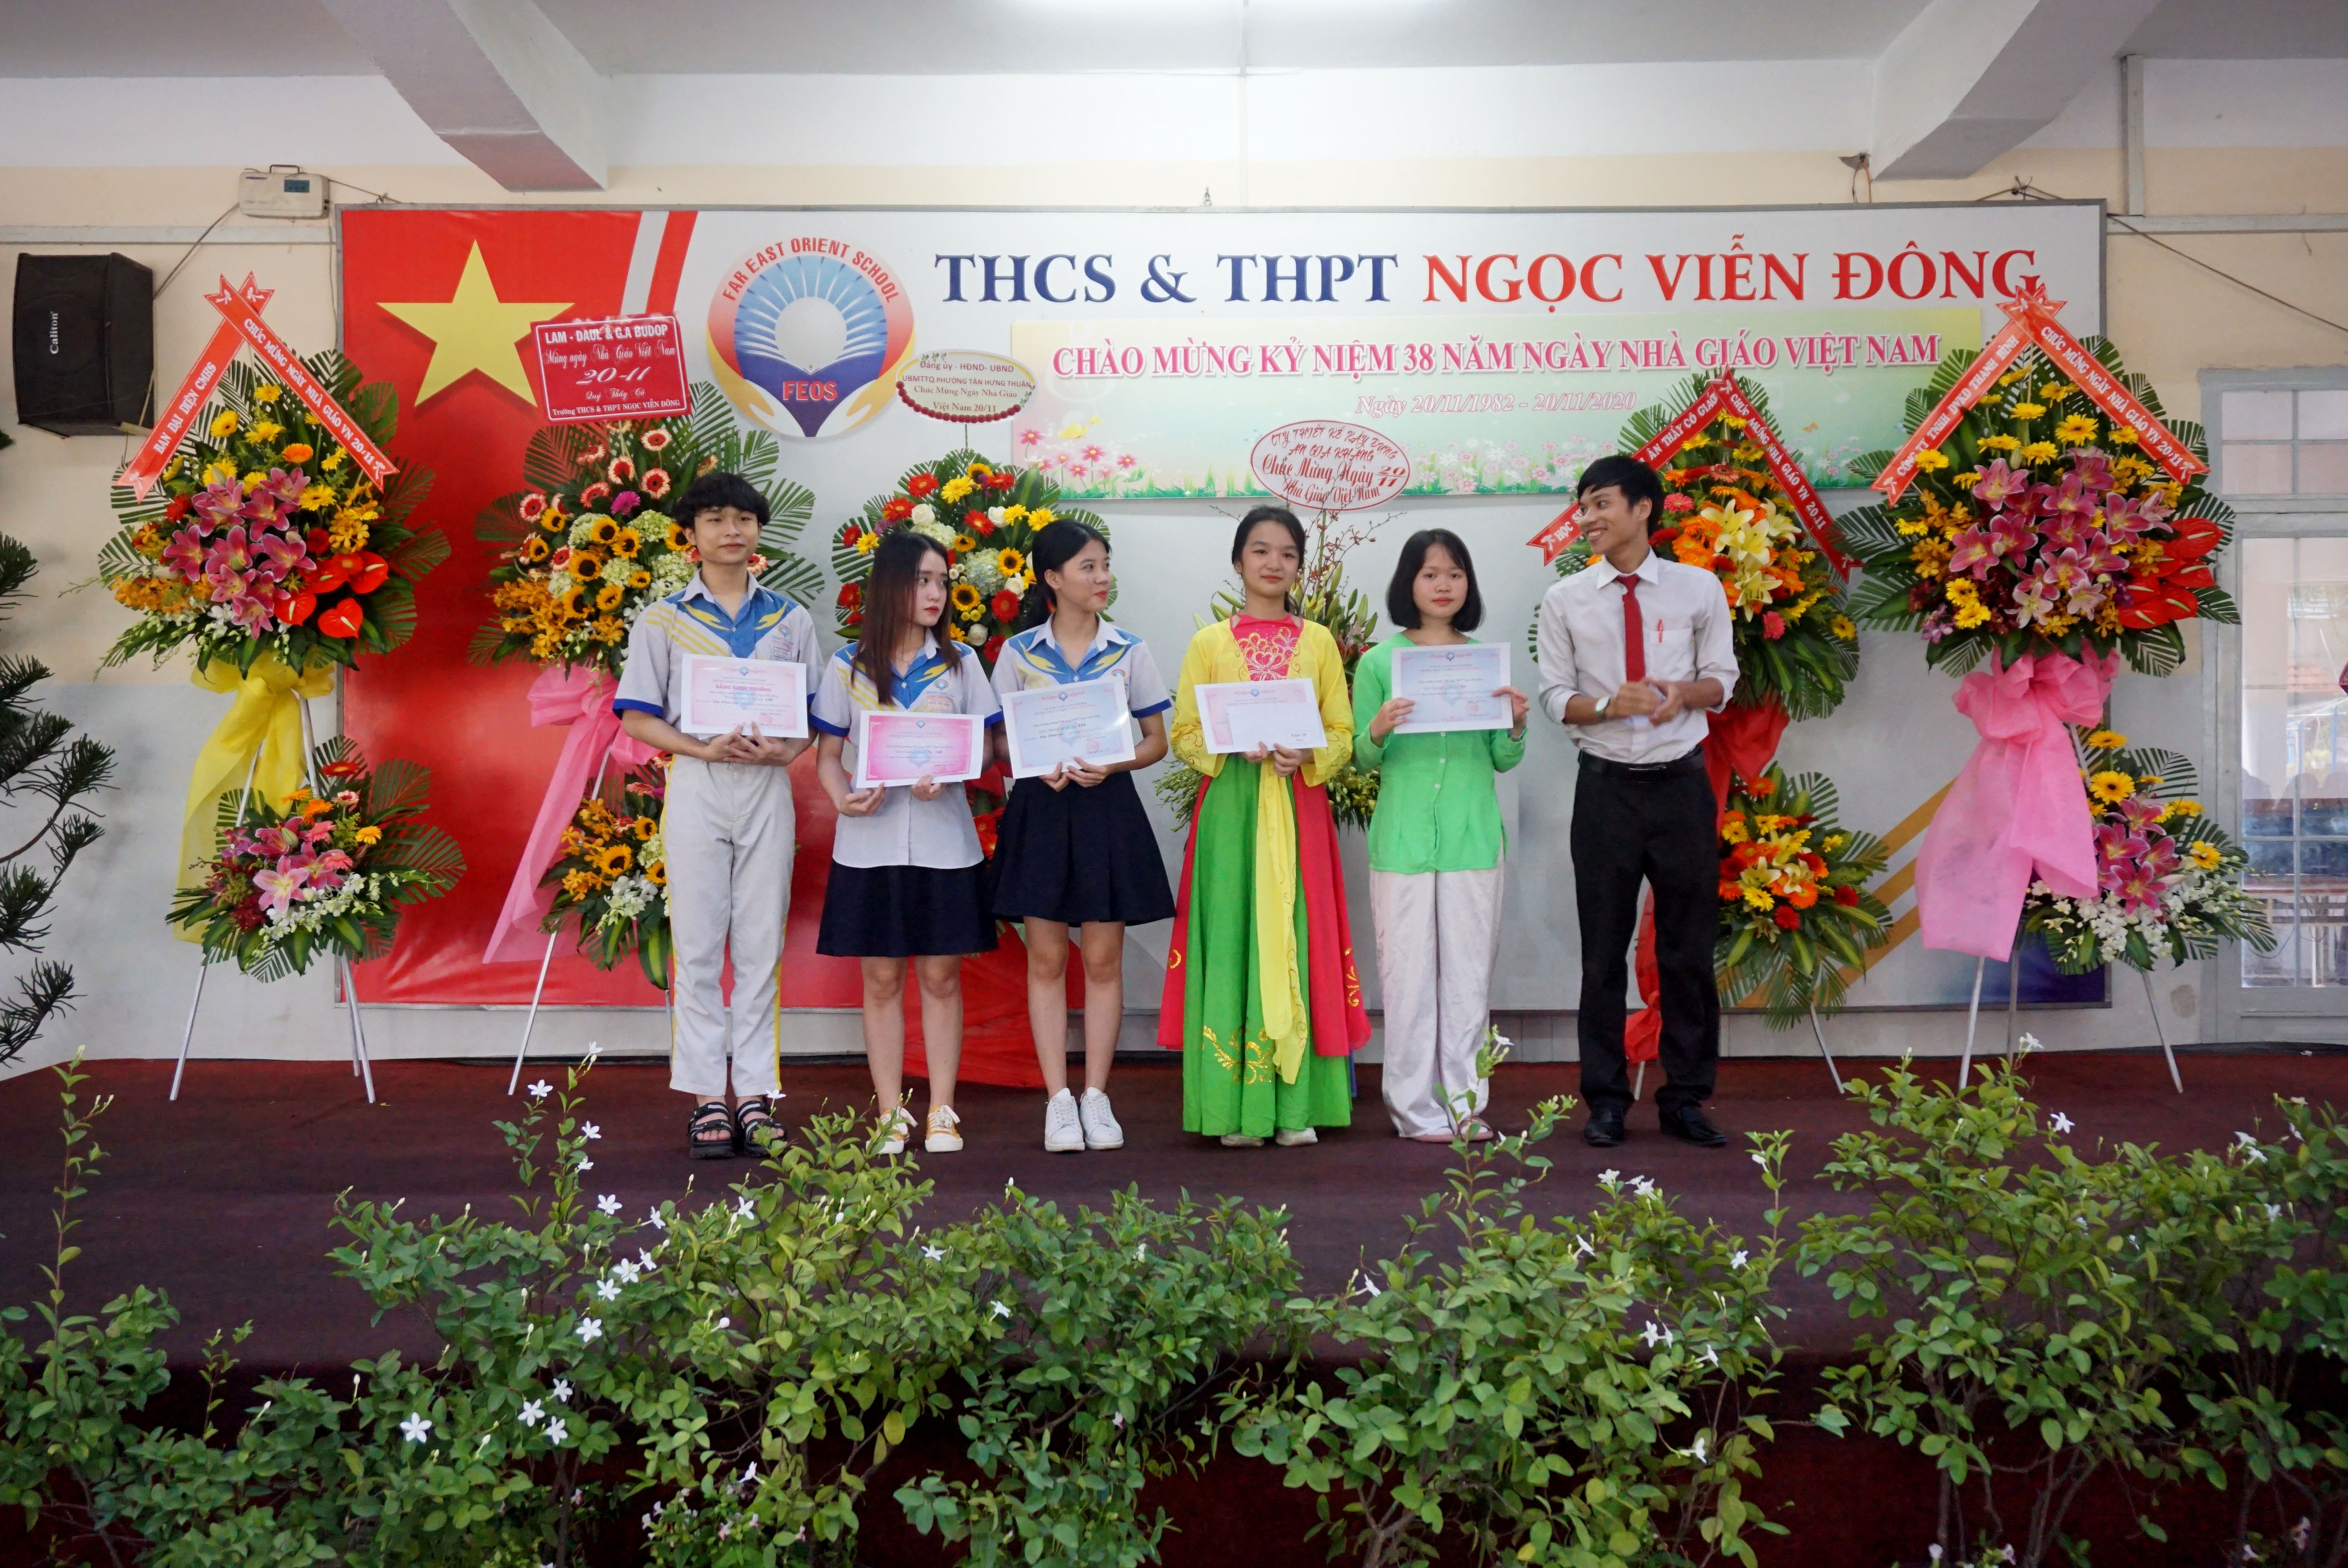 Chào mừng kỷ niệm 38 năm ngày Nhà giáo Việt Nam của trường THCS và THPT Ngọc Viễn Đông